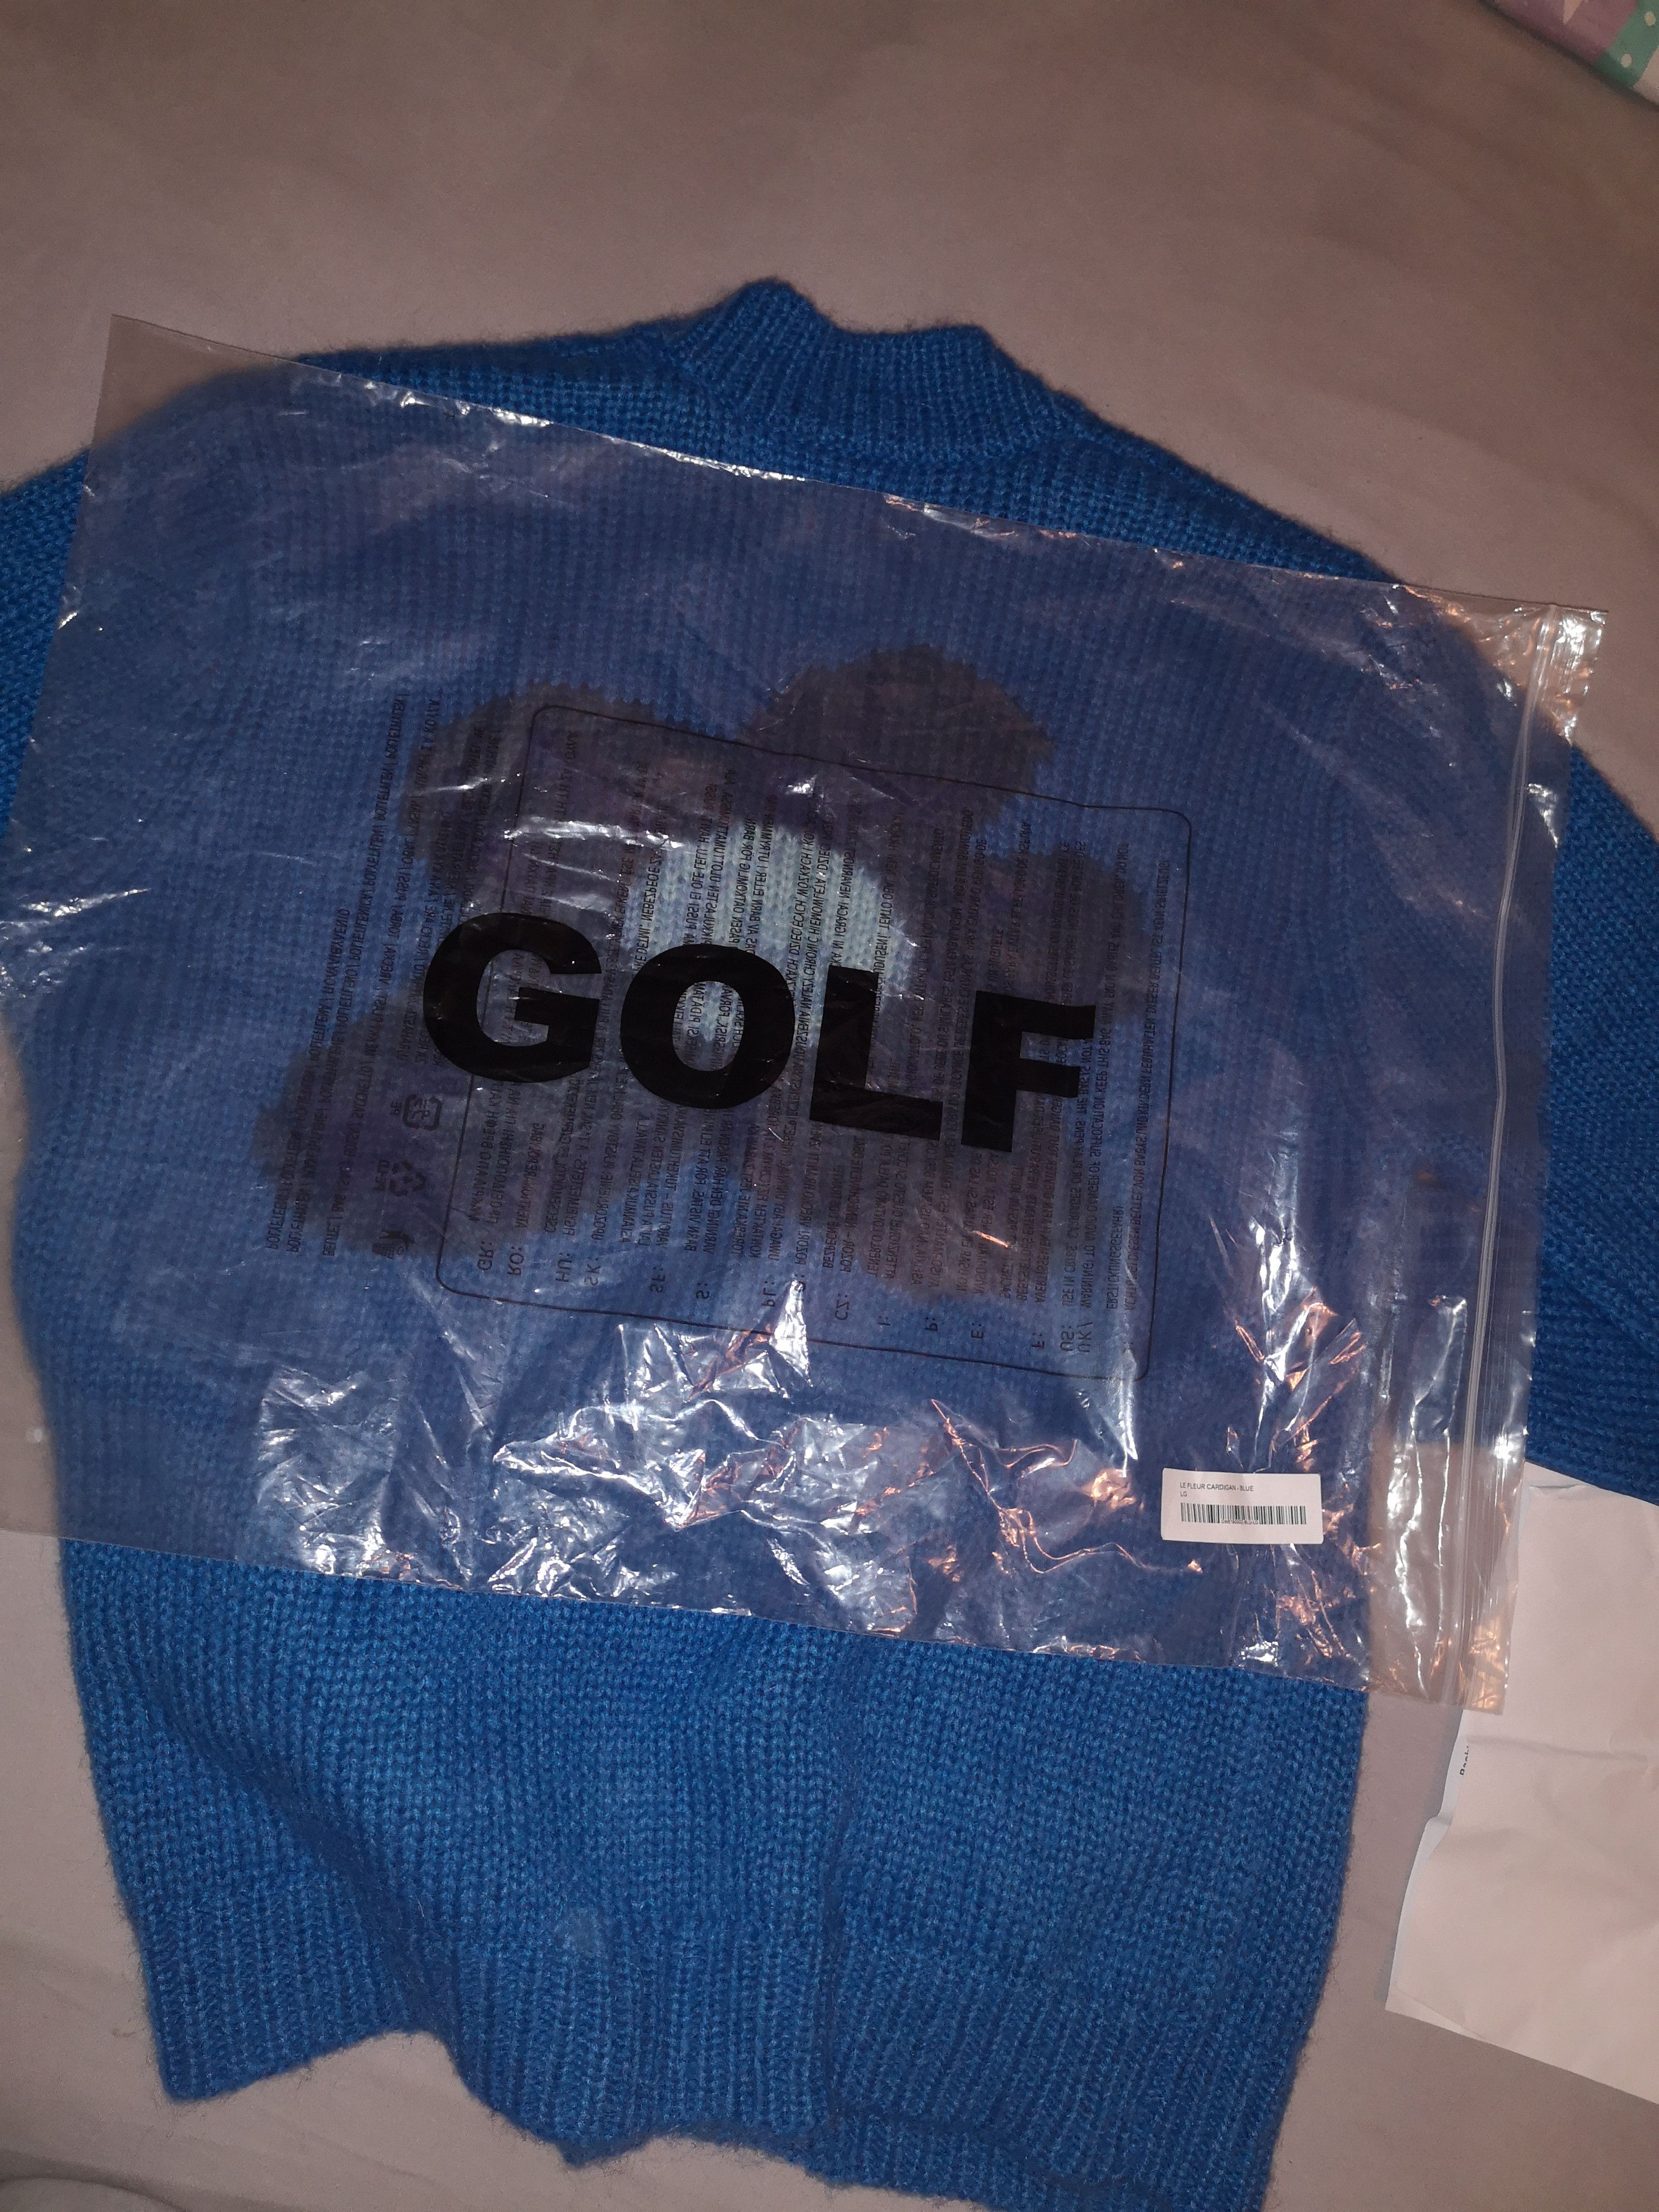 Golf Wang Golf Le Fleur Cardigan Blue Size US L / EU 52-54 / 3 - 4 Preview